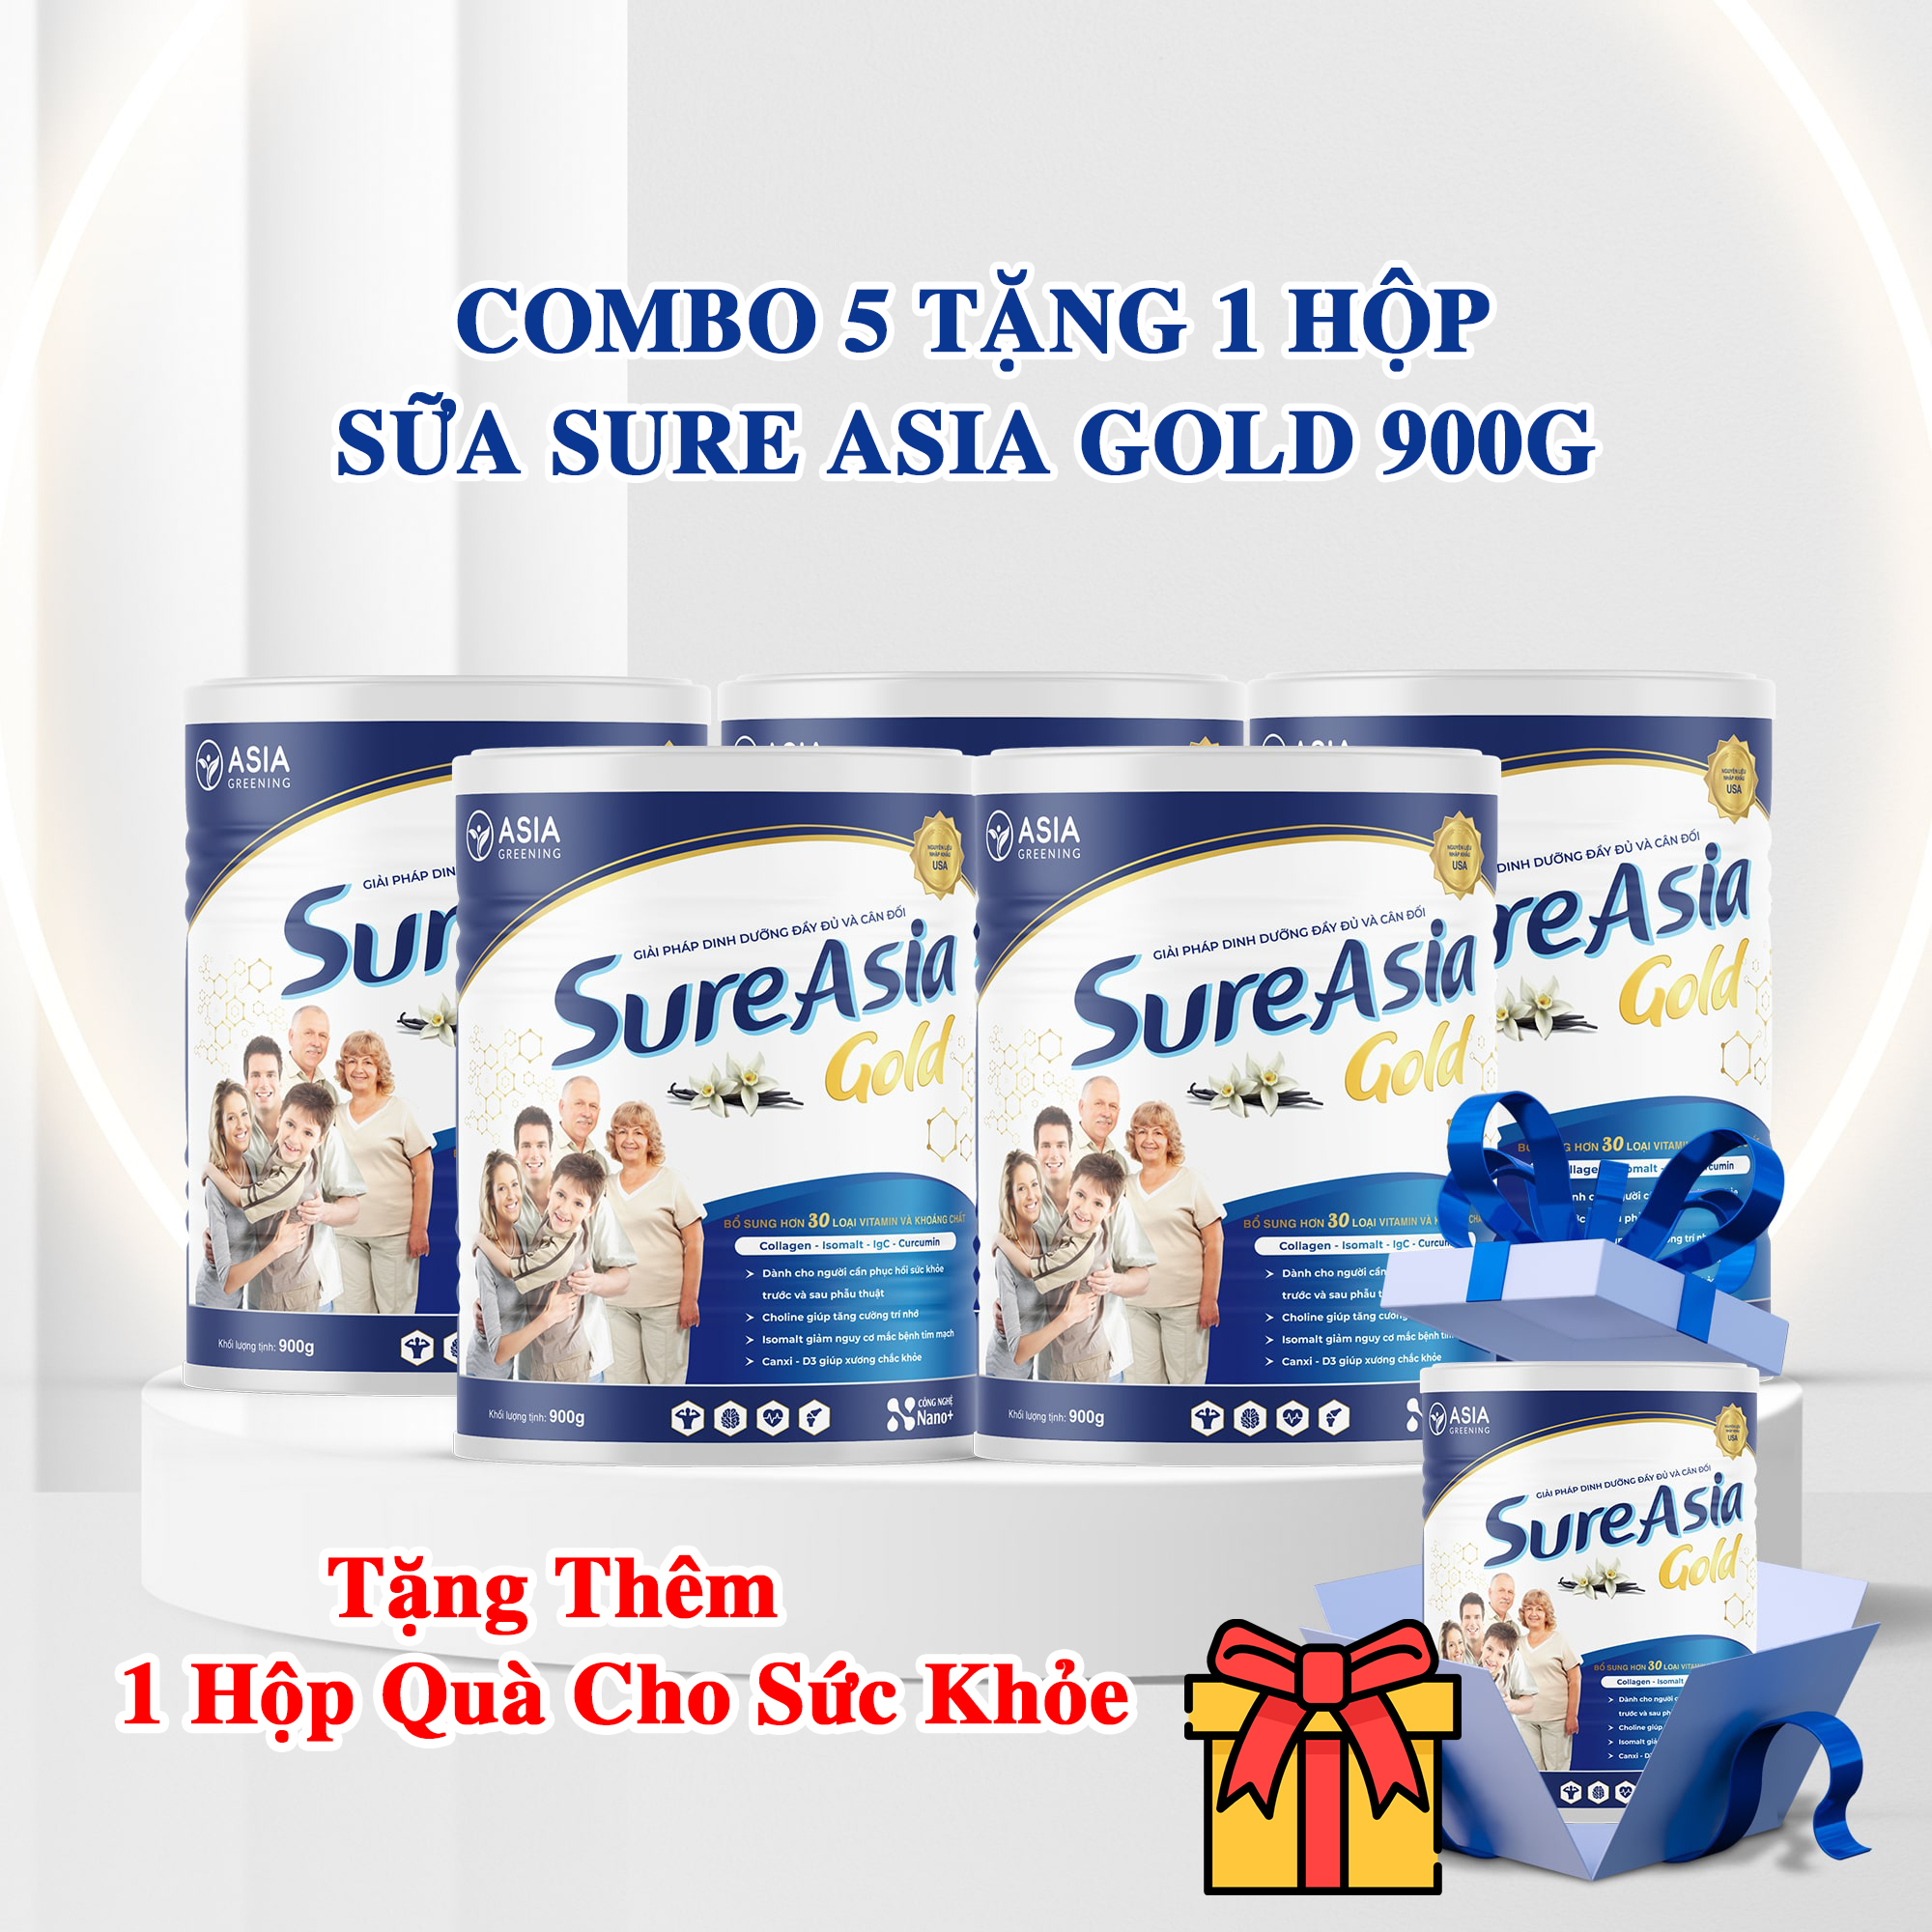 Combo 5 Tặng 1 Hộp Sữa Sure Asia Gold HCN 900gr. Tặng Kèm 1 Hộp Quà Cho Sức Khỏe